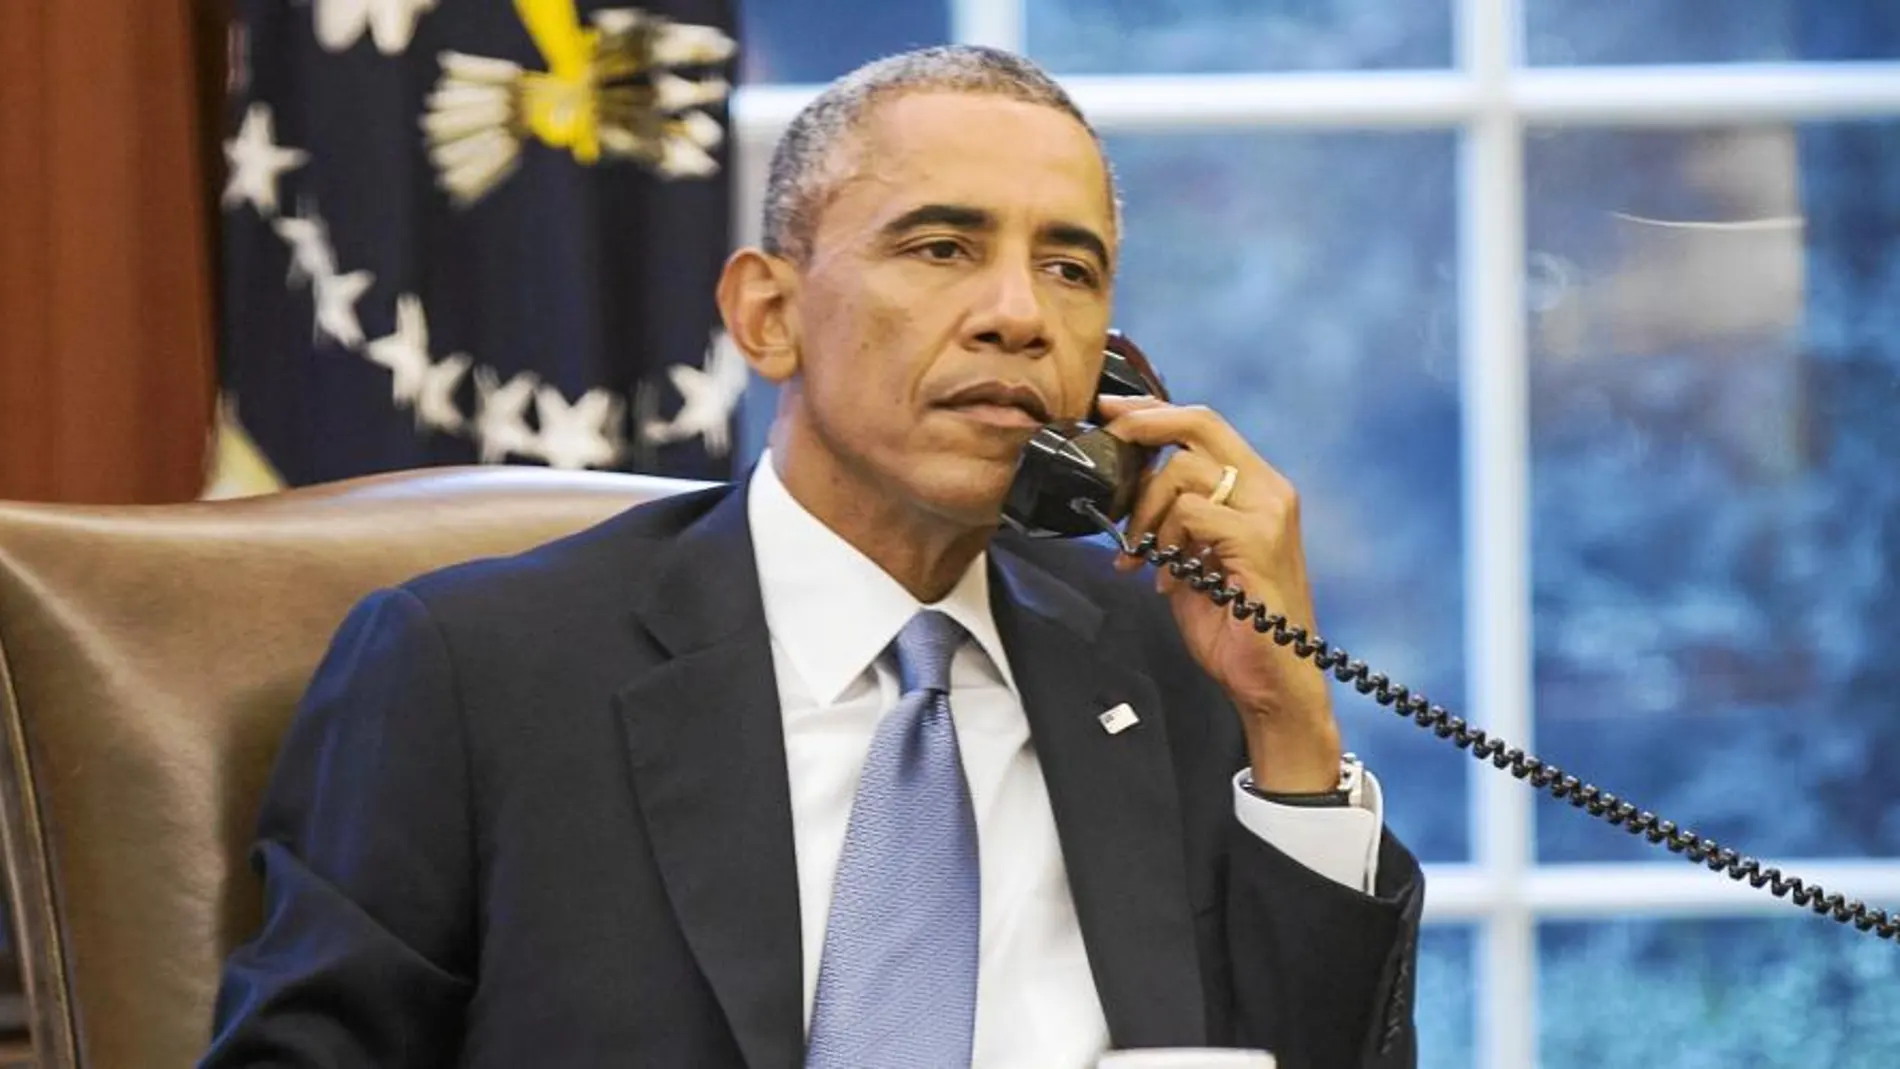 Obama, ayer, en el Despacho Oval durante una conversación telefónica con el rey saudí Abdulá sobre la intervención en Irak